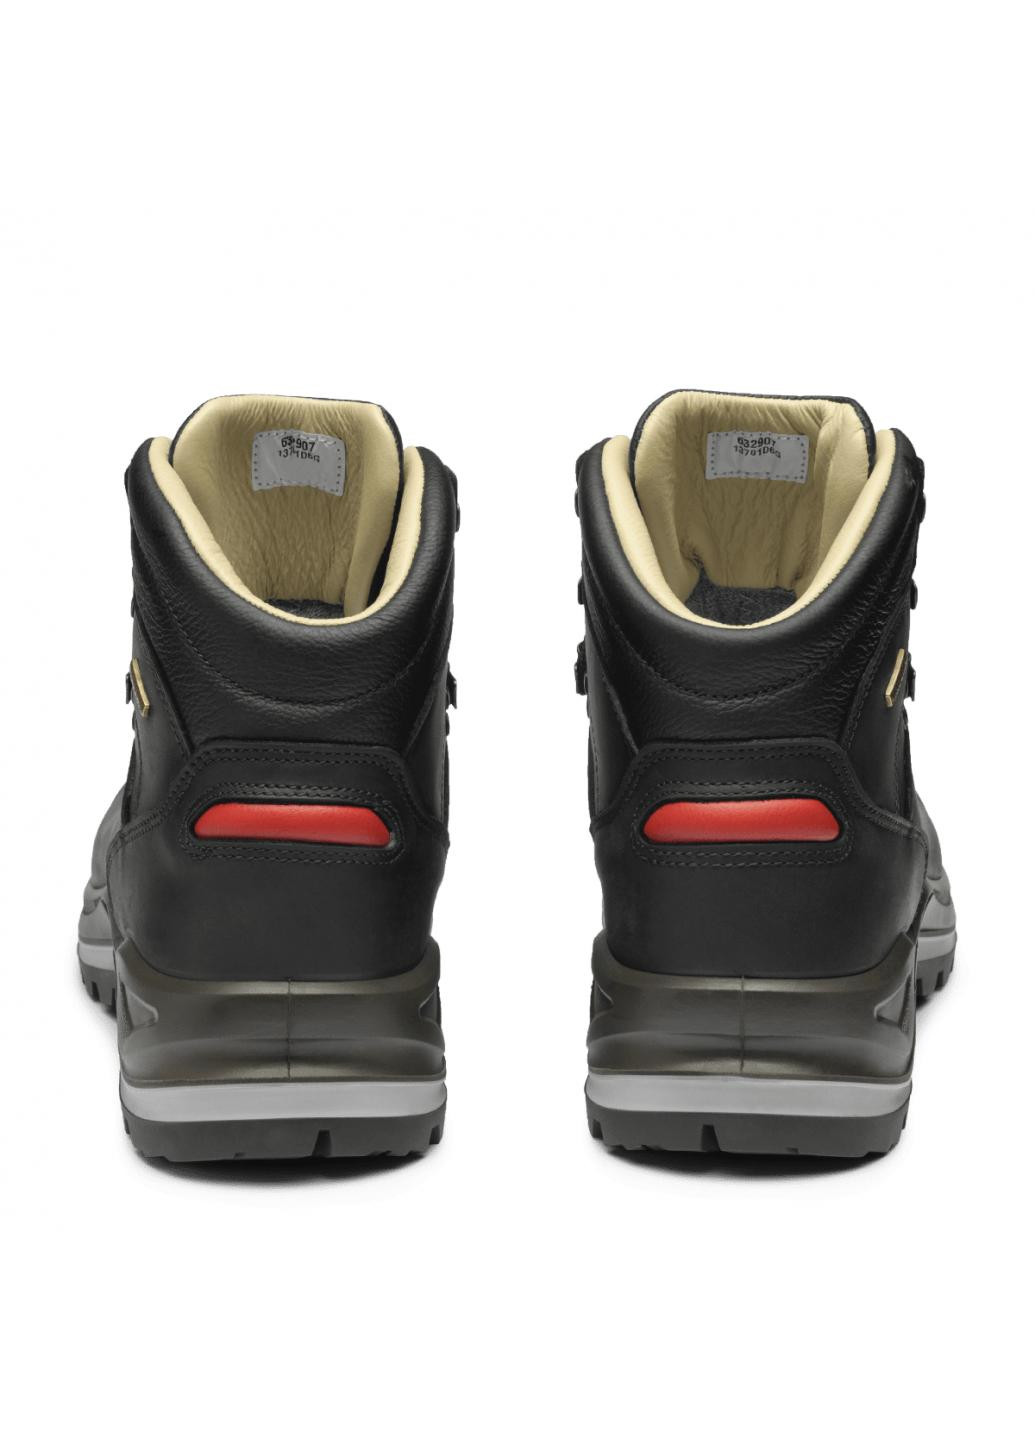 Черные зимние кожаные ботинки 13701-d14wt Grisport